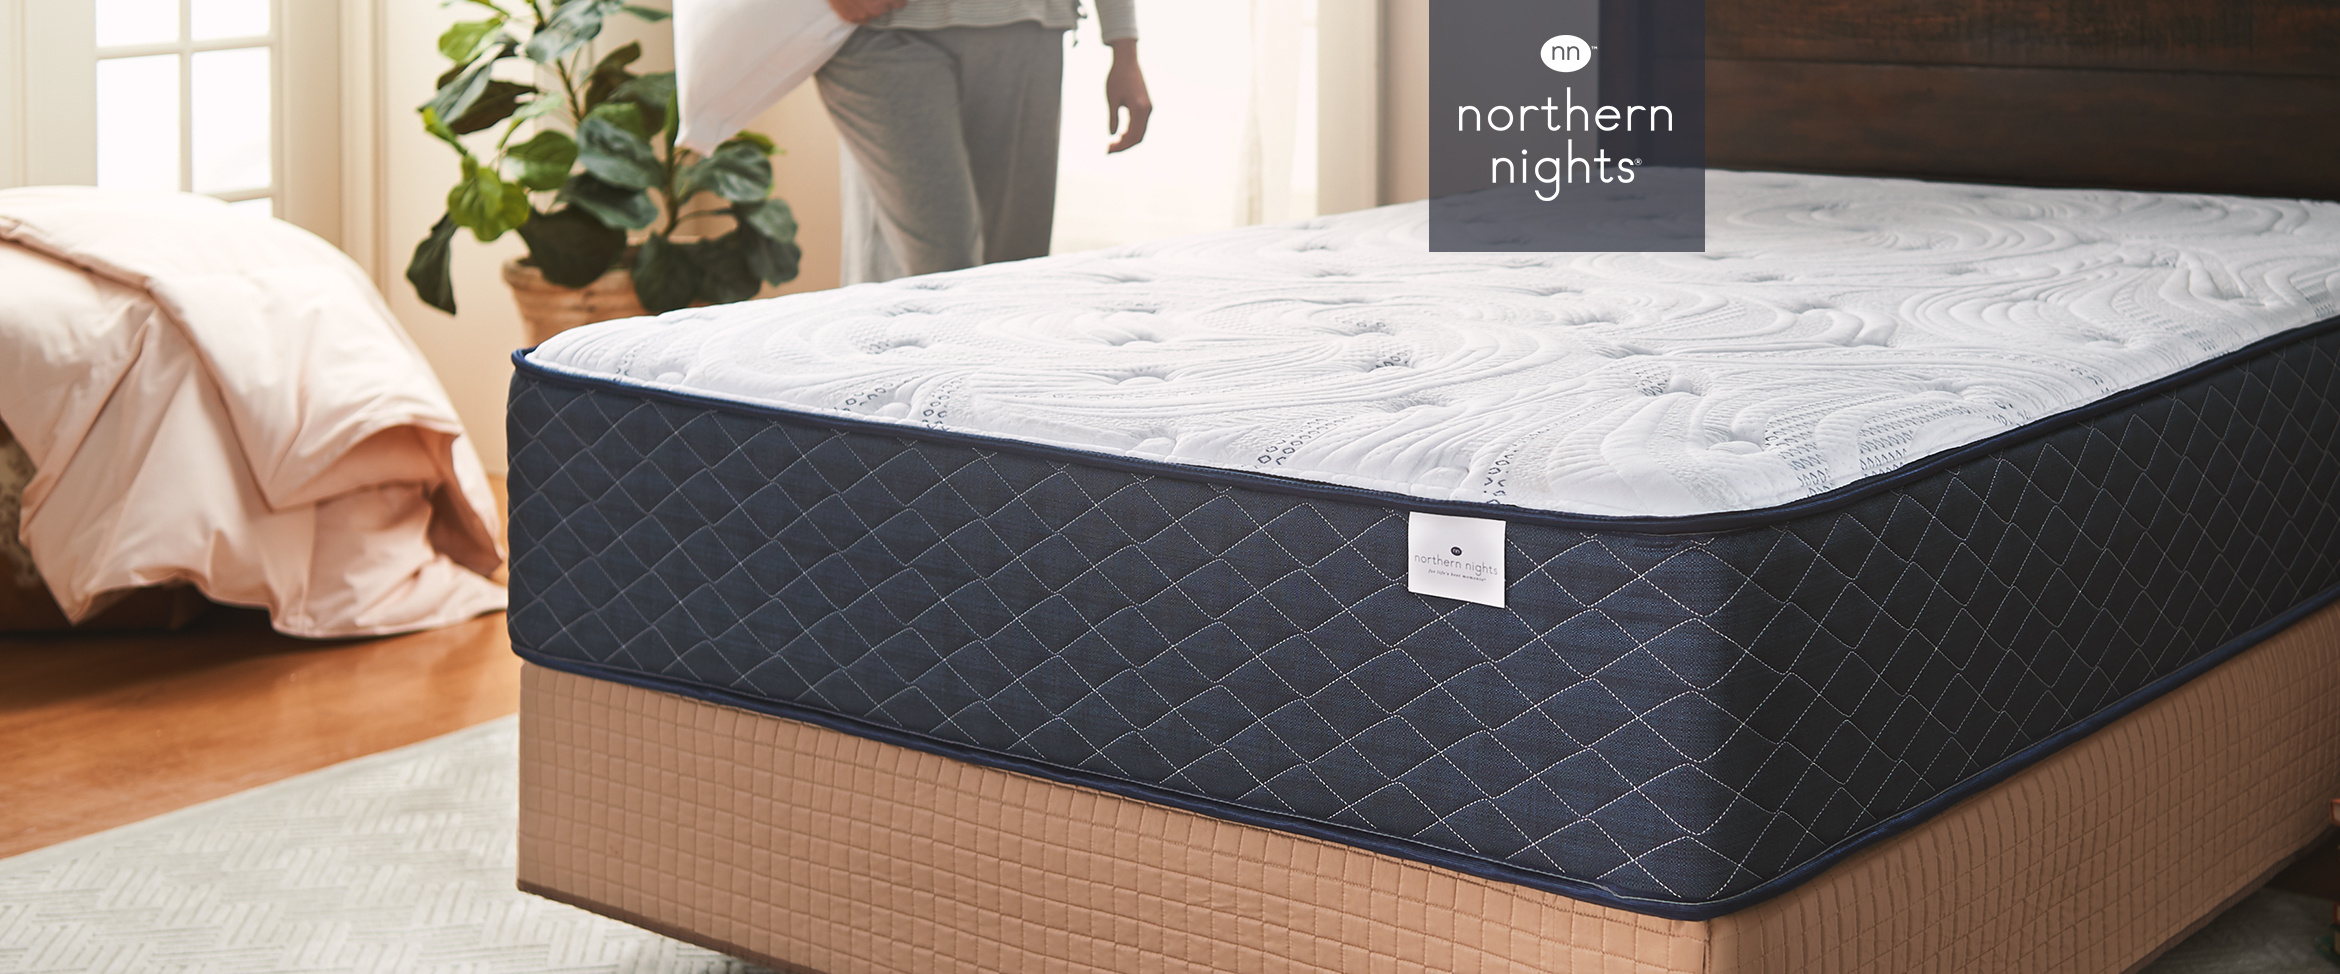 northern nights mattress 11'' dream hybrid